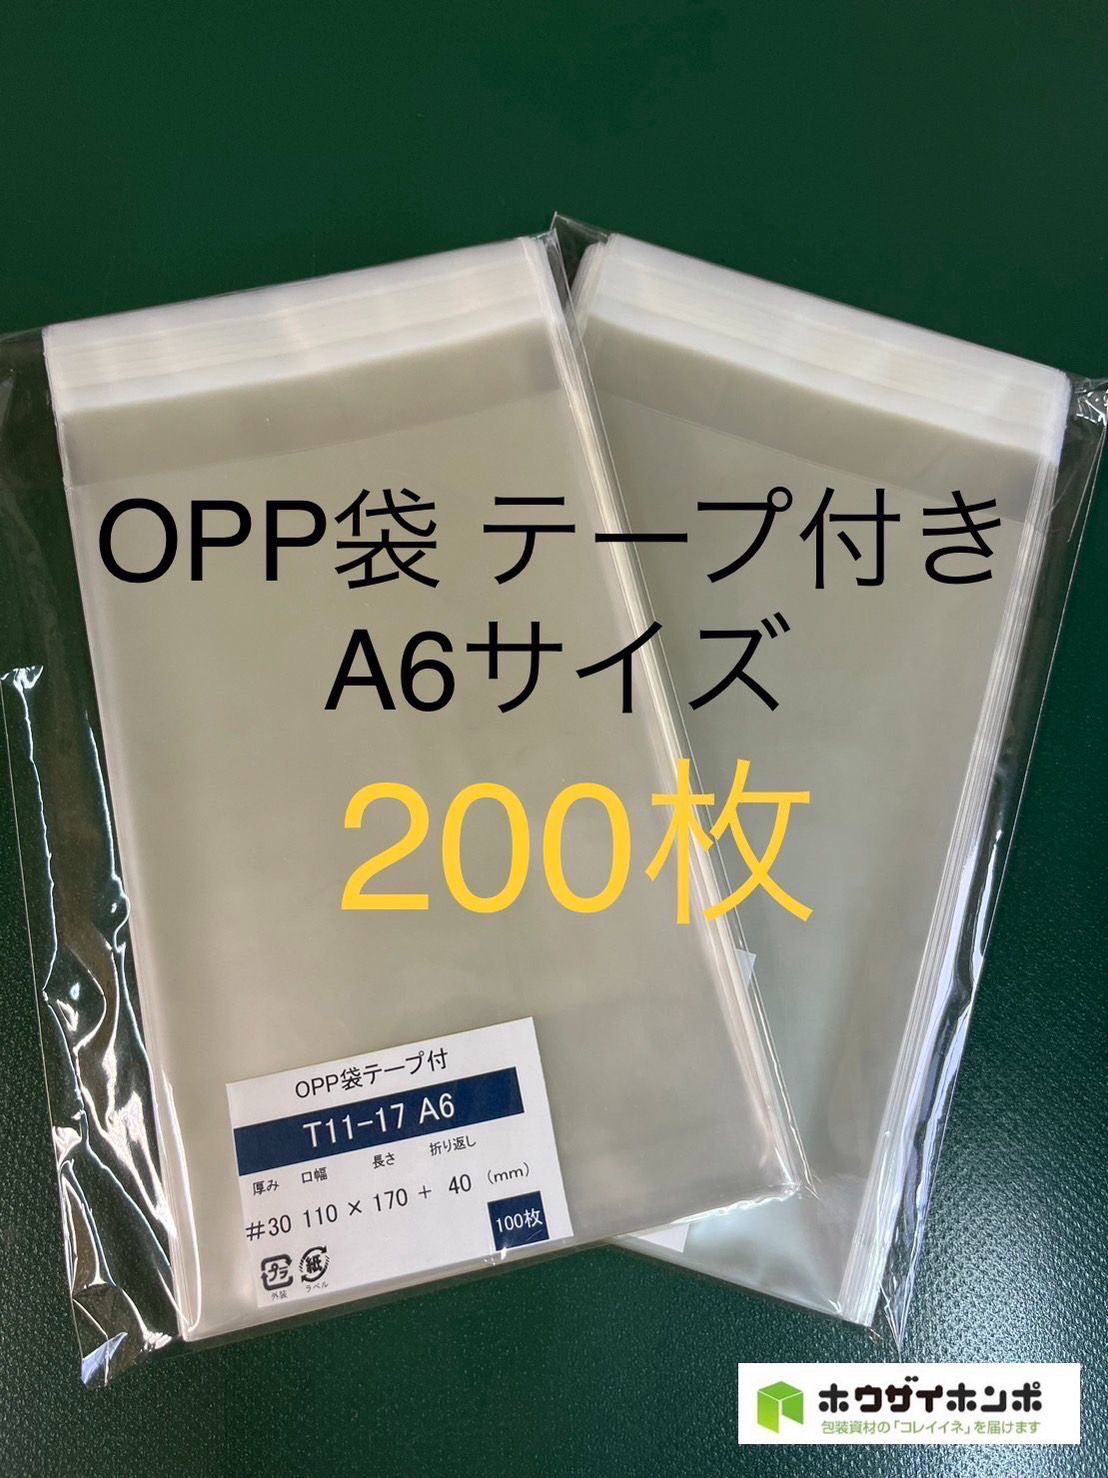 テープ付きOPP袋 A6サイズ 200枚 - オフィス用品